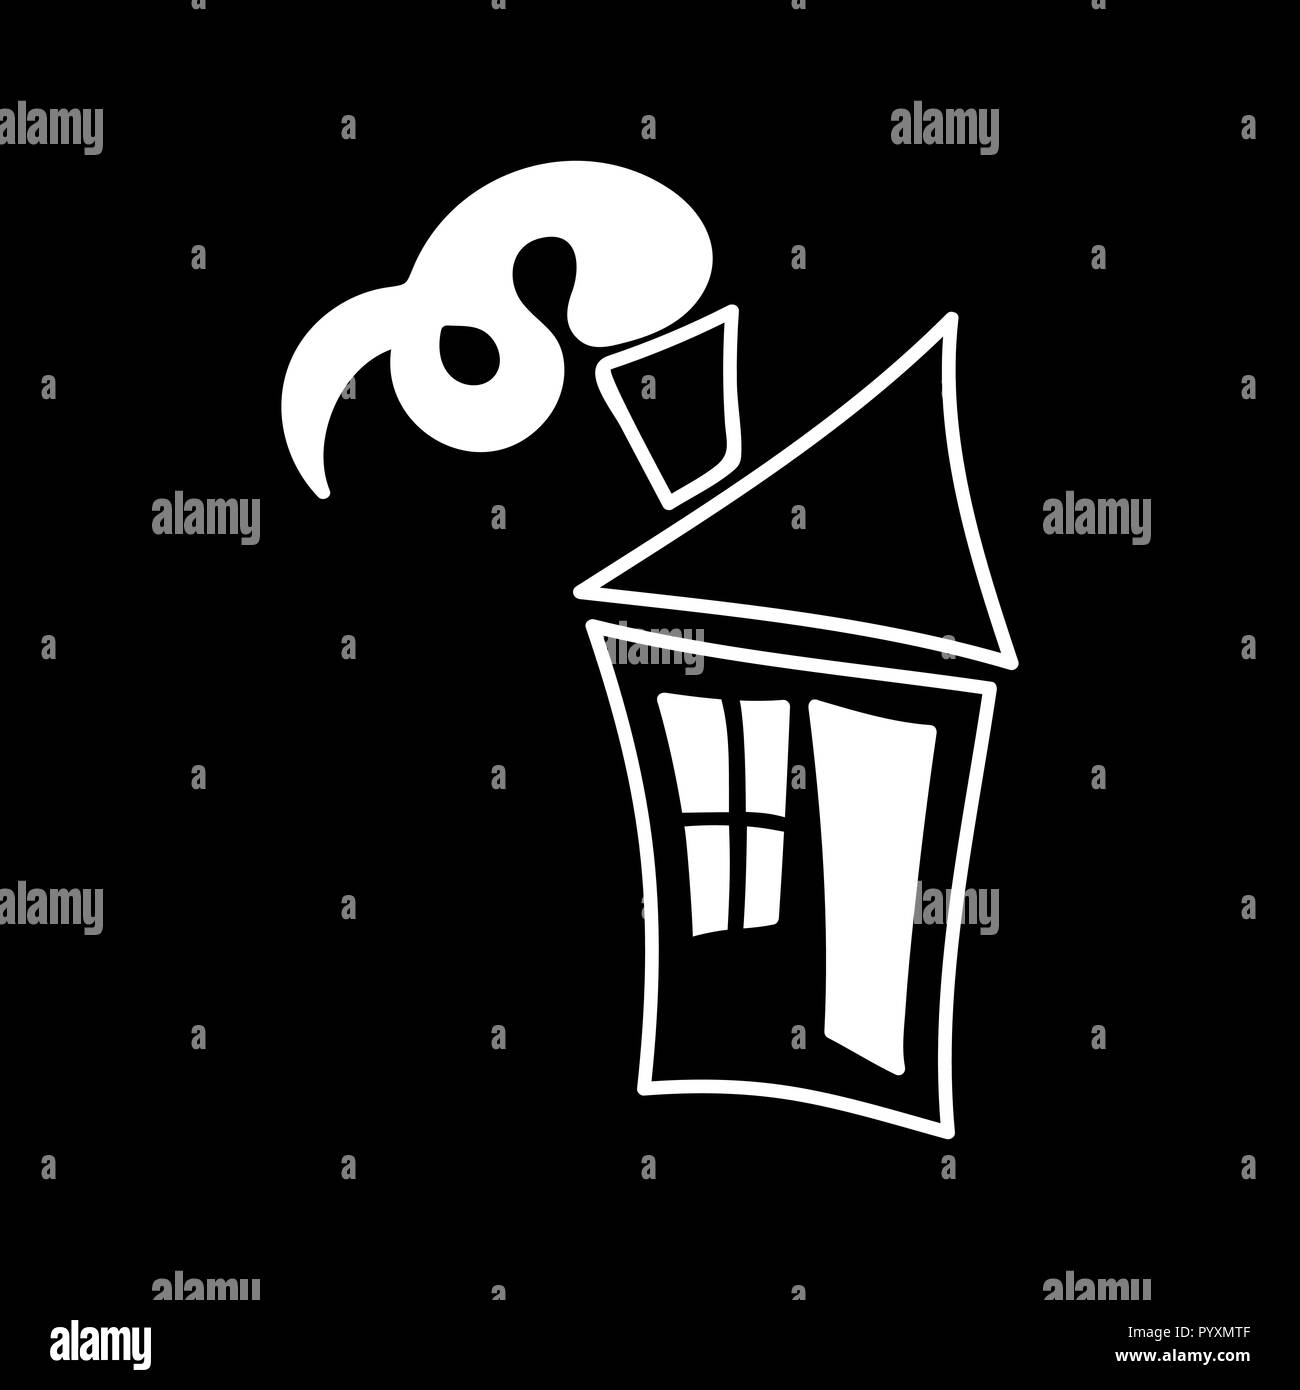 Toy house retrò icona logo. isolato silhouette bianca. Vettore , cartoon chalk style Illustrazione Vettoriale